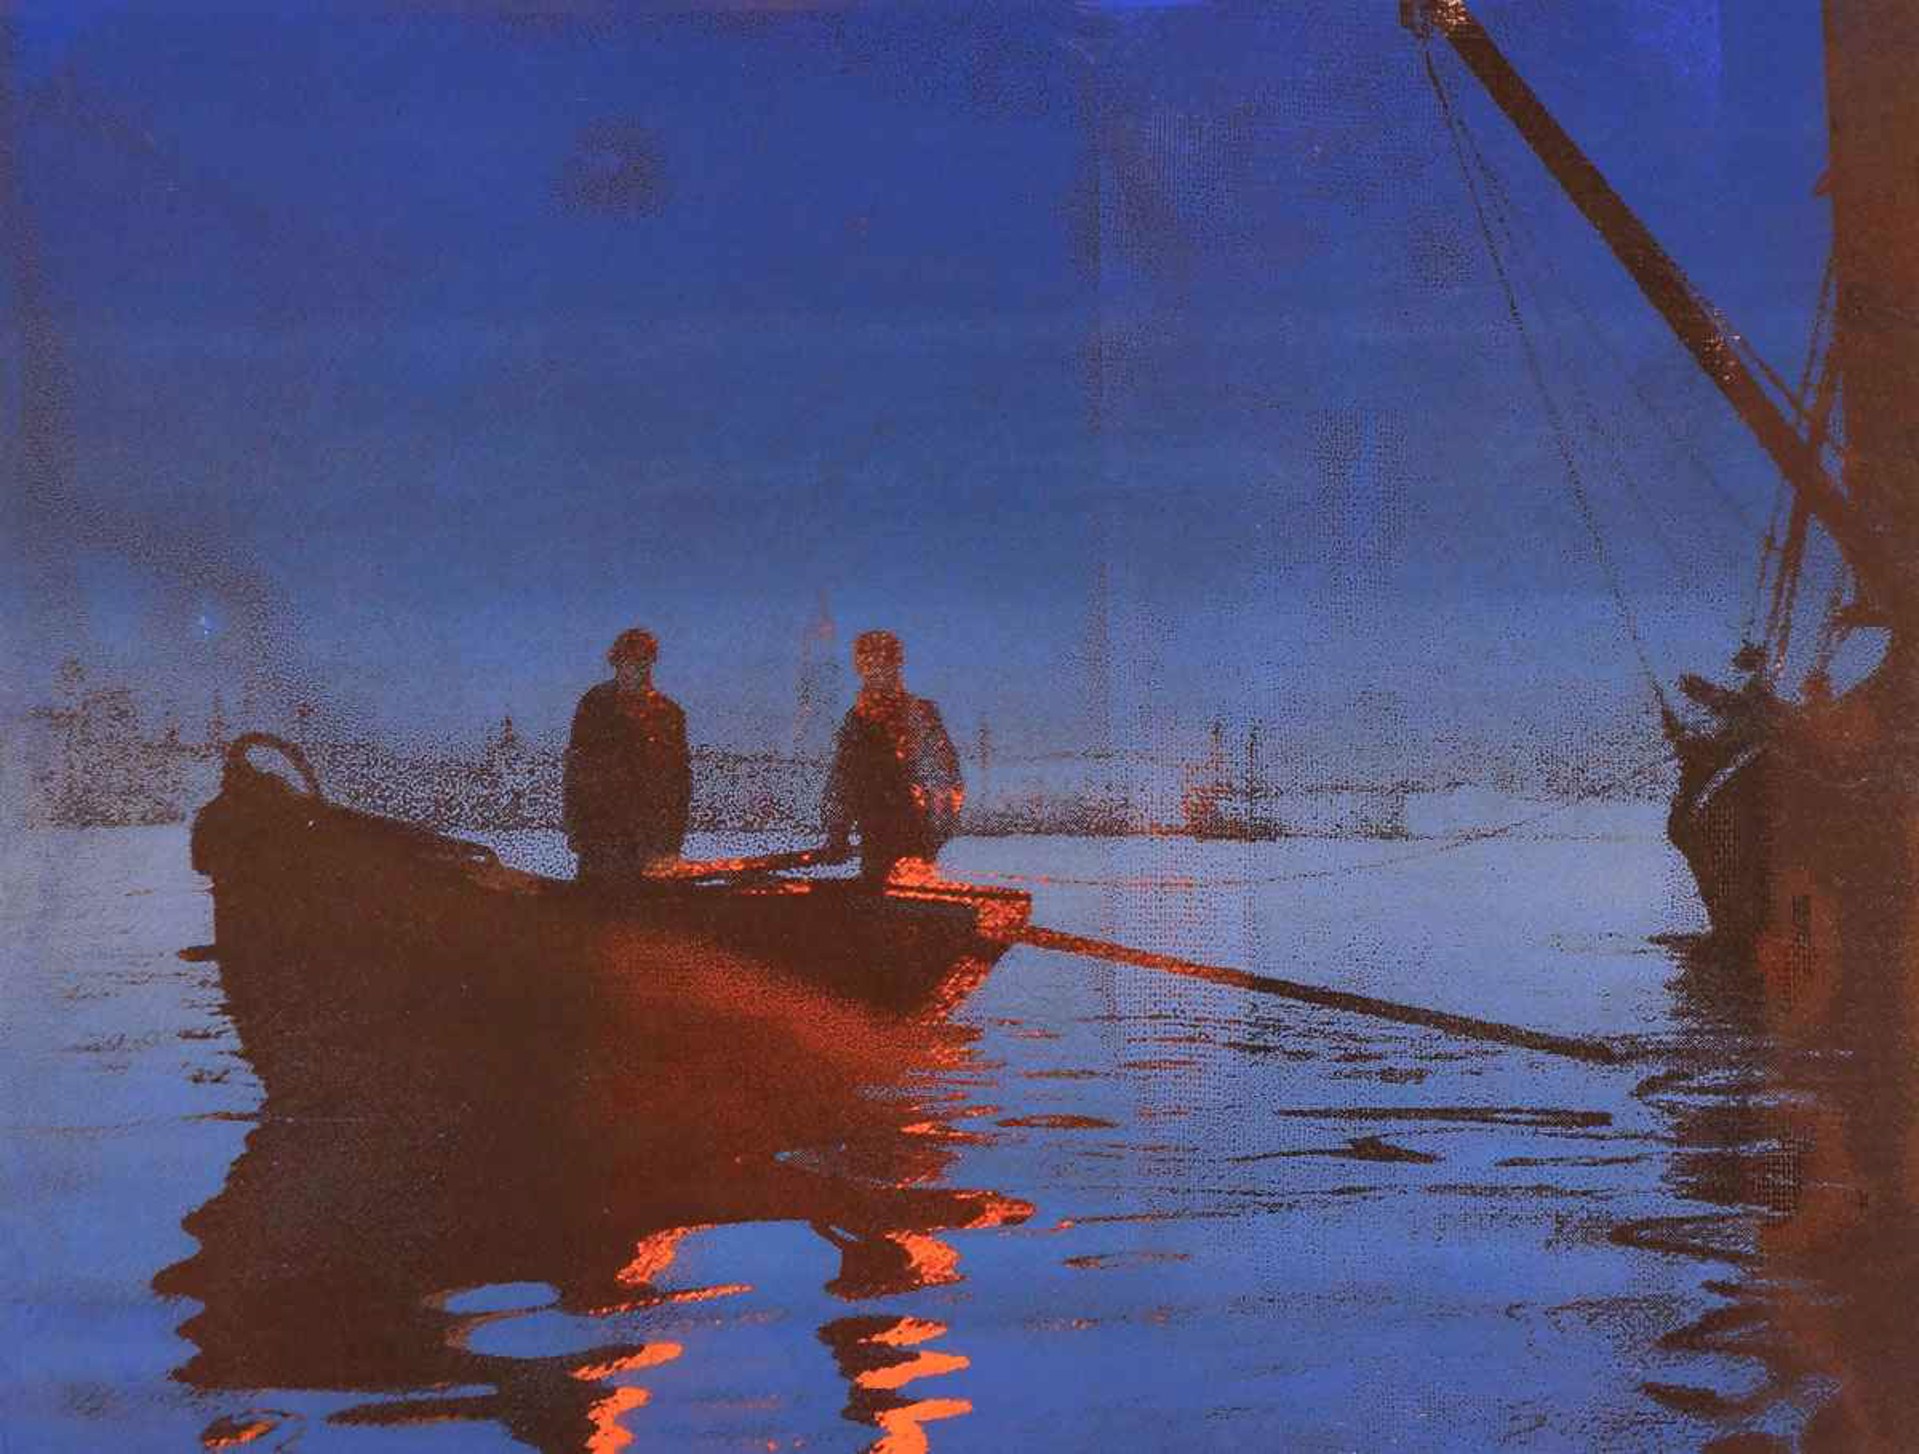 Two Men, Boat, Orange Light by Philip Buller